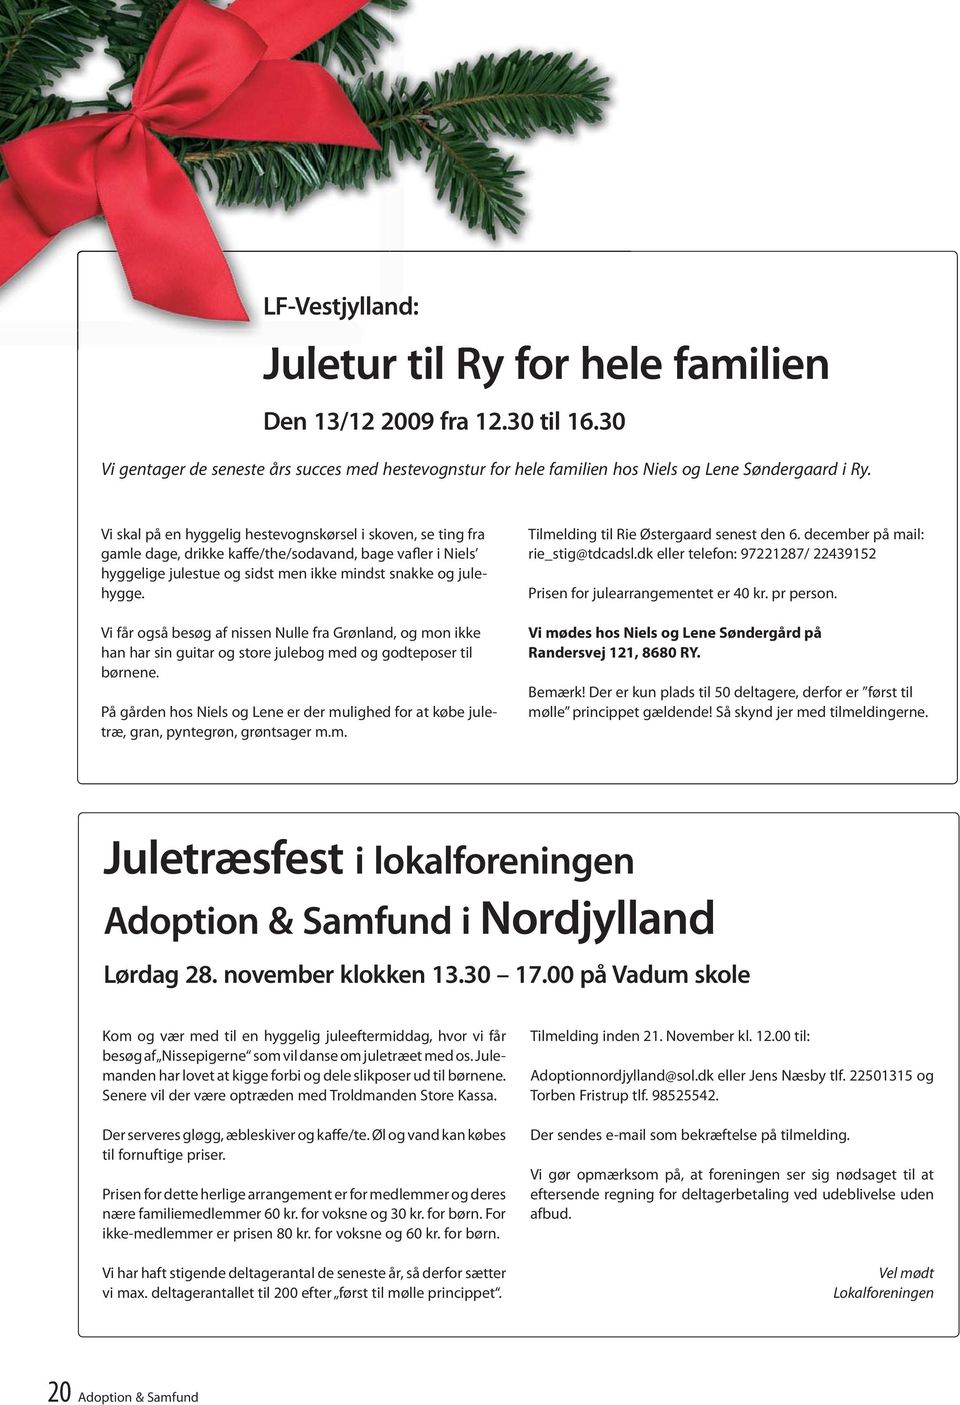 Vi får også besøg af nissen Nulle fra Grønland, og mon ikke han har sin guitar og store julebog med og godteposer til børnene.